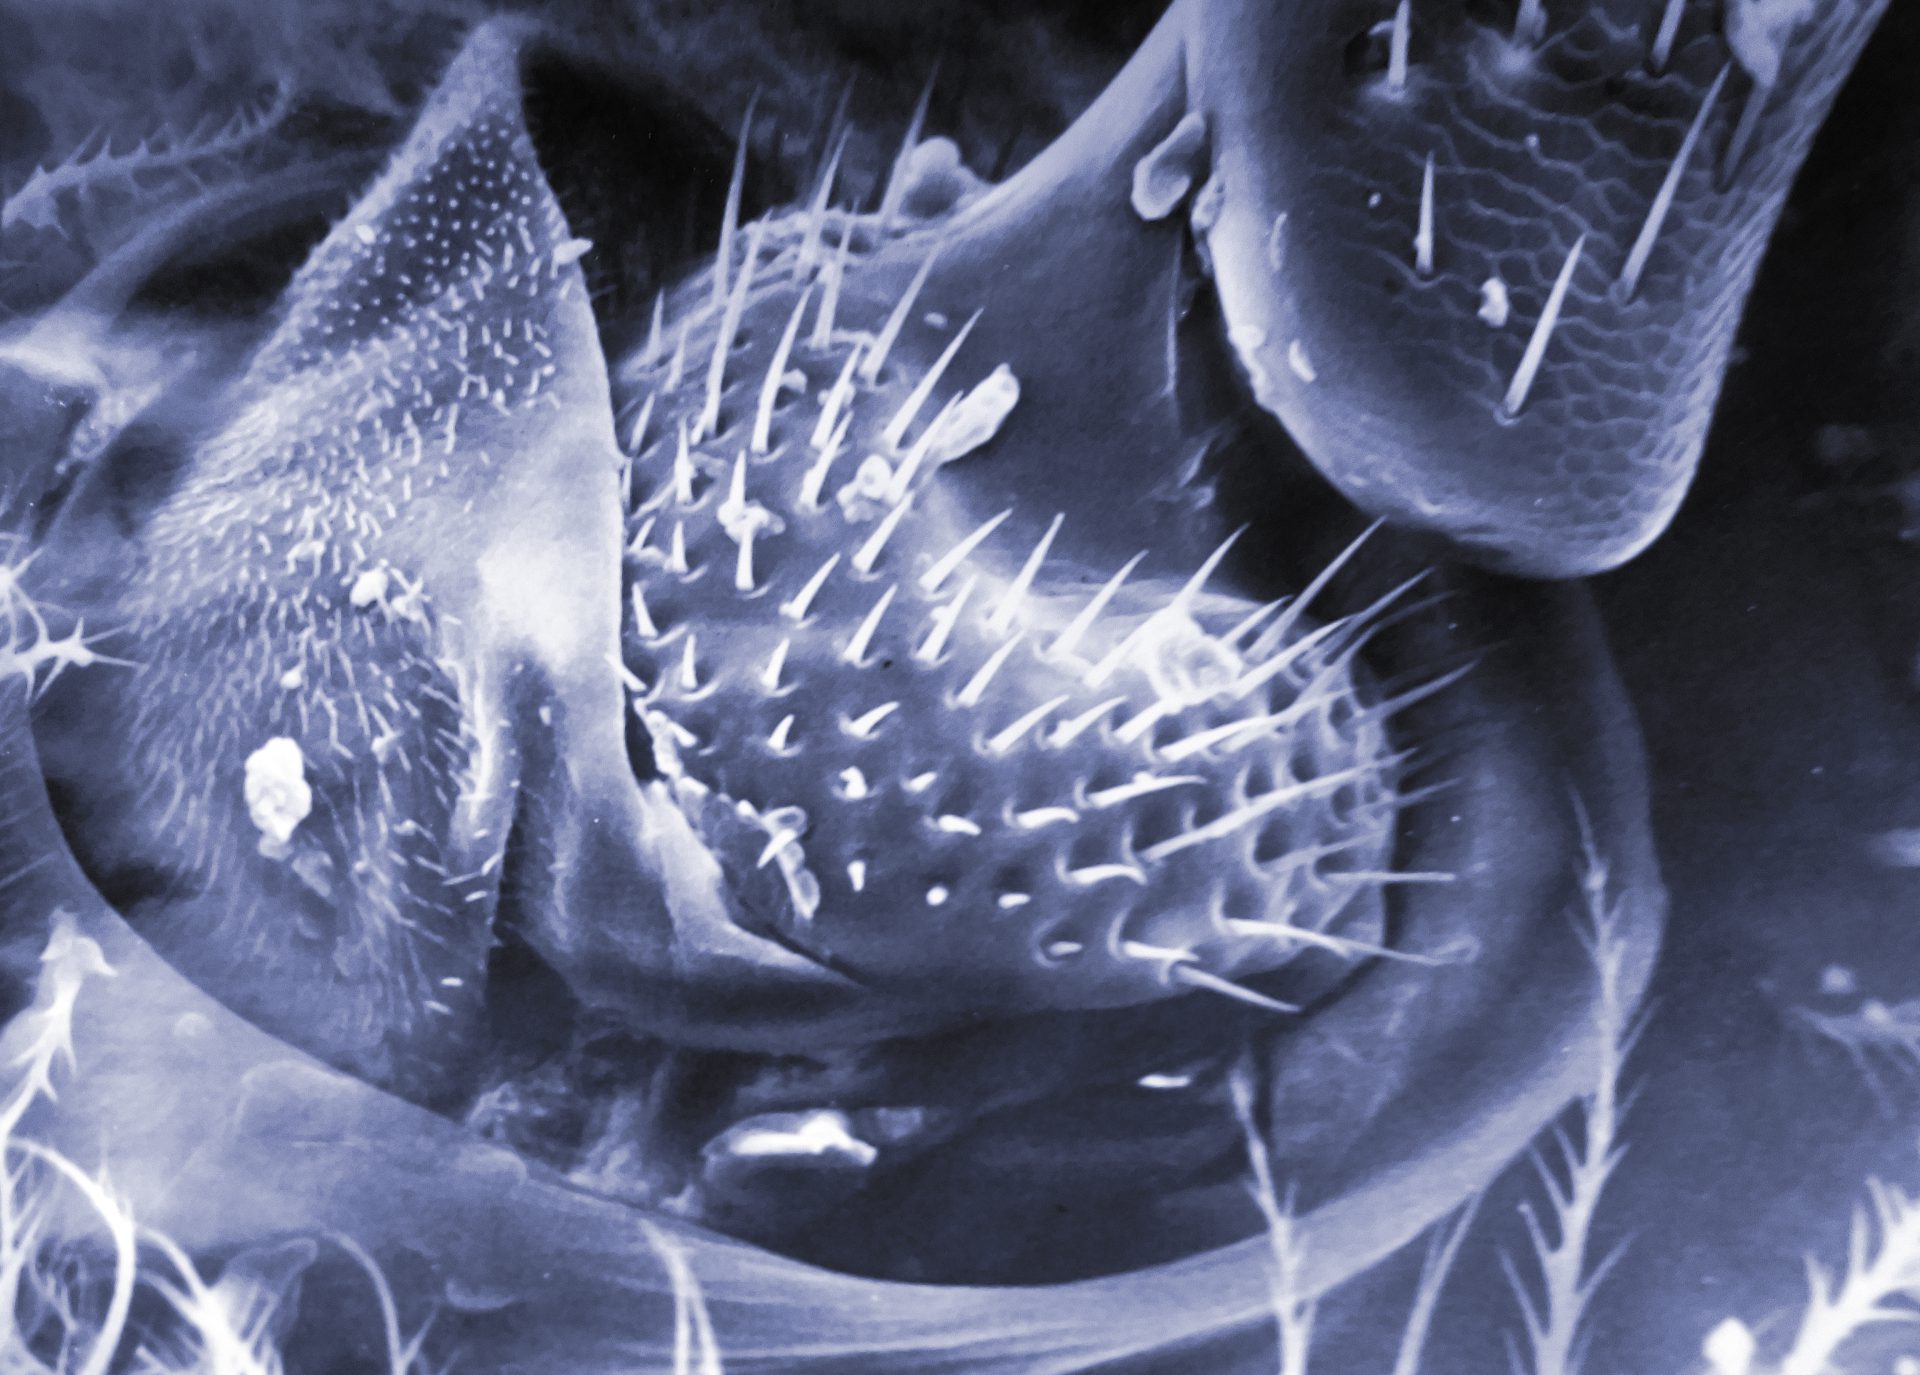 בני קמינסקי צילם בעזרת מיקרוסקופ אלקטרוני מחיי הדבורים